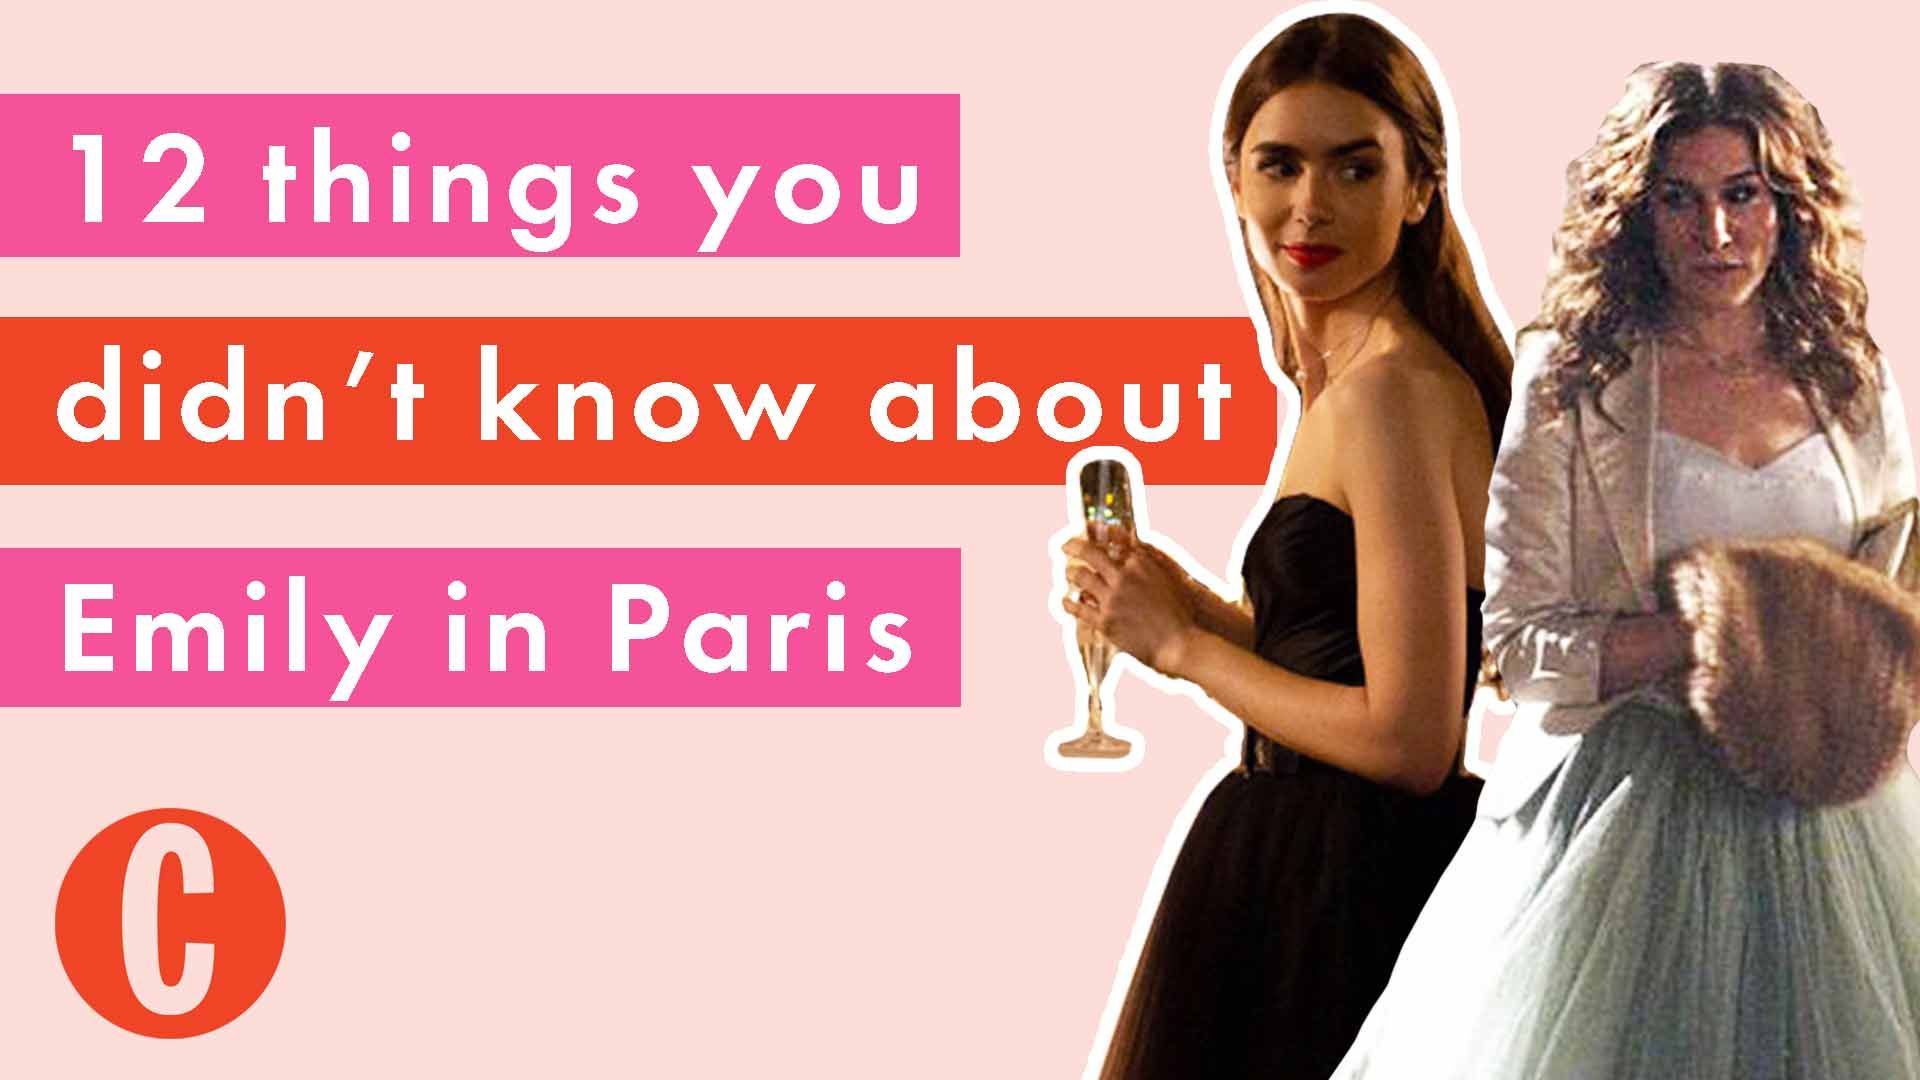 Emily in Paris season 1 recap: What happened in season 1?